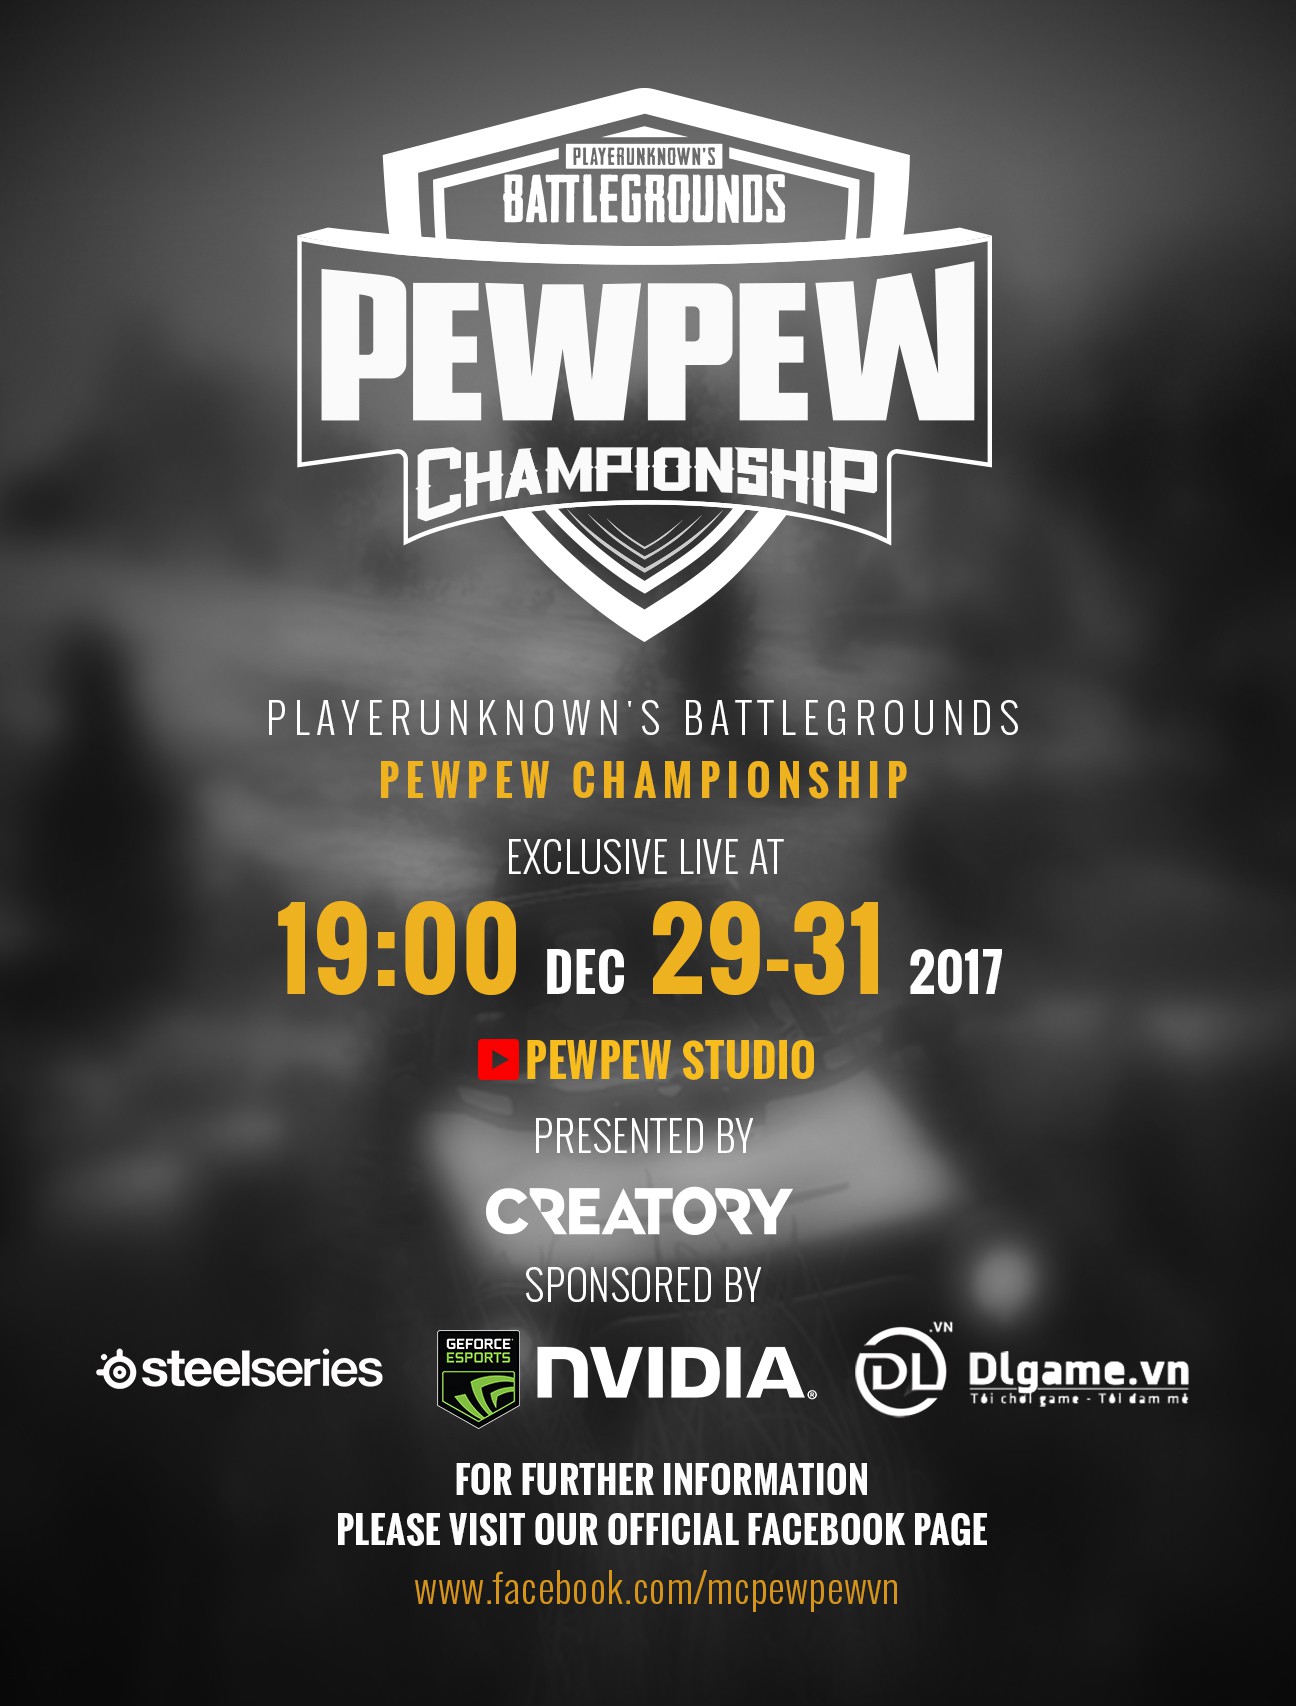 PewPew Championship: Thế là giới hâm mộ PUBG nước ta lại sắp có một giải đấu toàn 